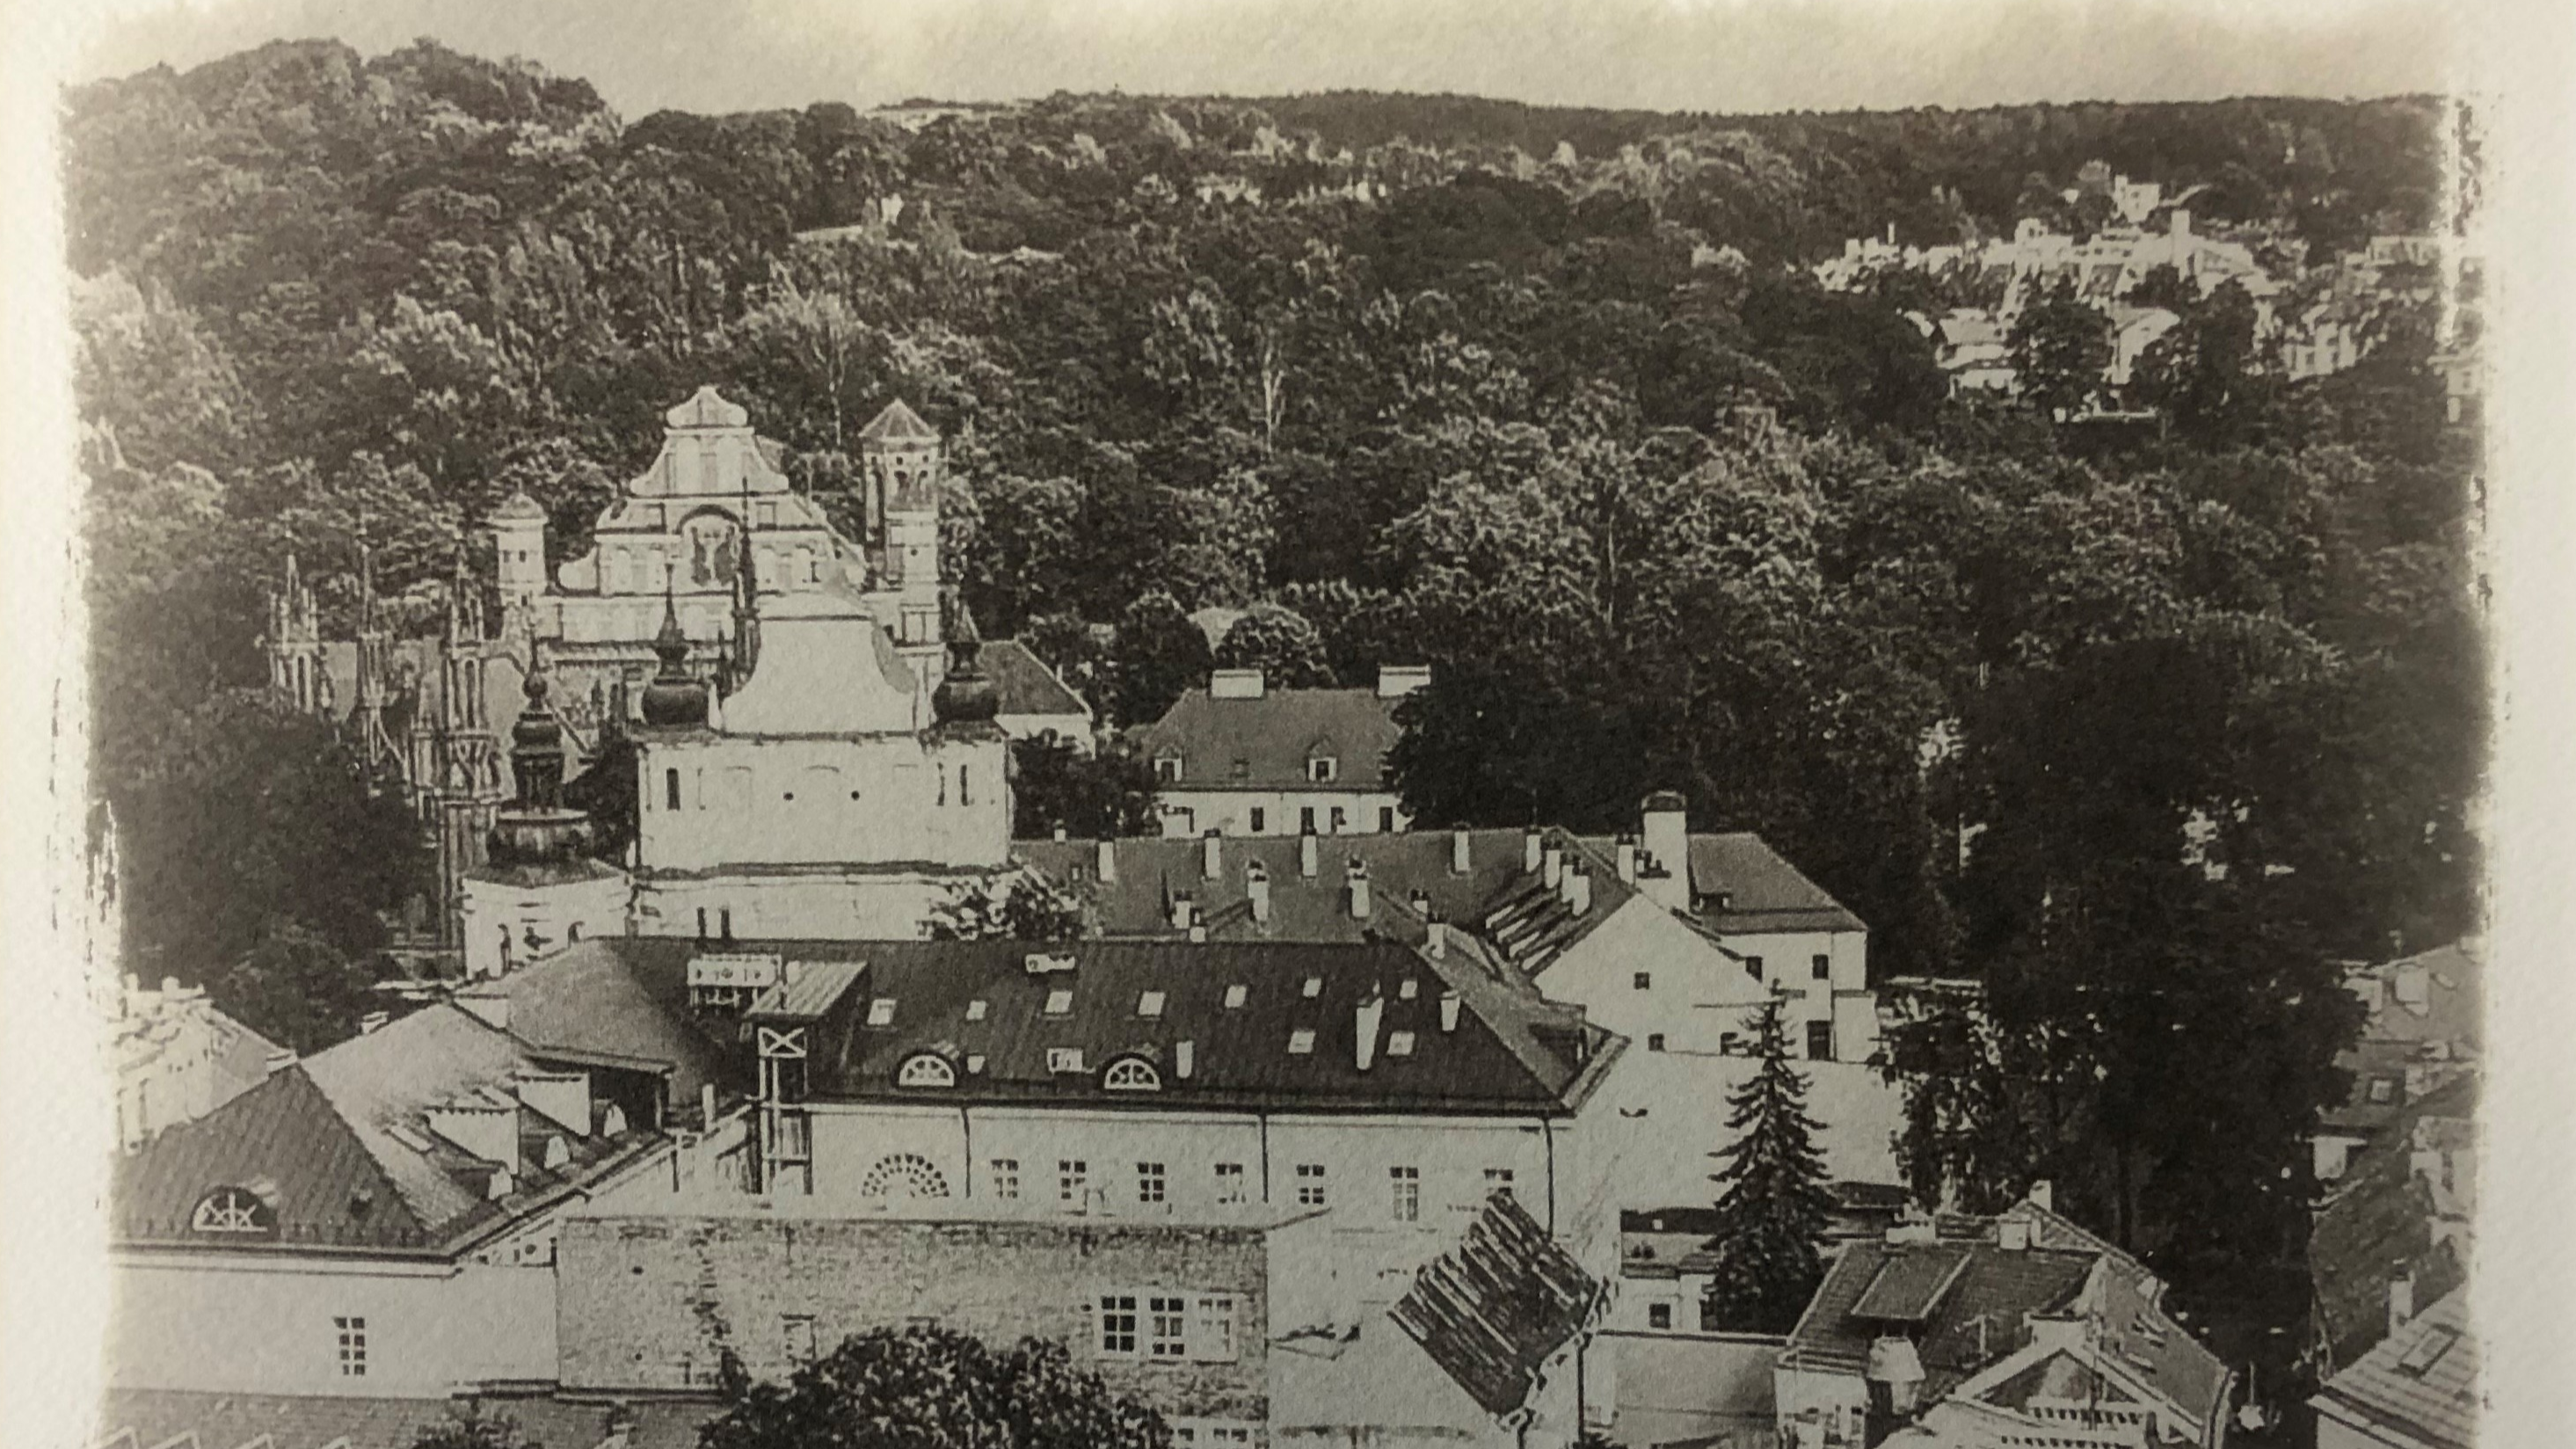 Lietuviešu fotogrāfa Sauļus Paukštis izstāde “Viļņas attēli” Rīgas Sv. Pētera baznīcā